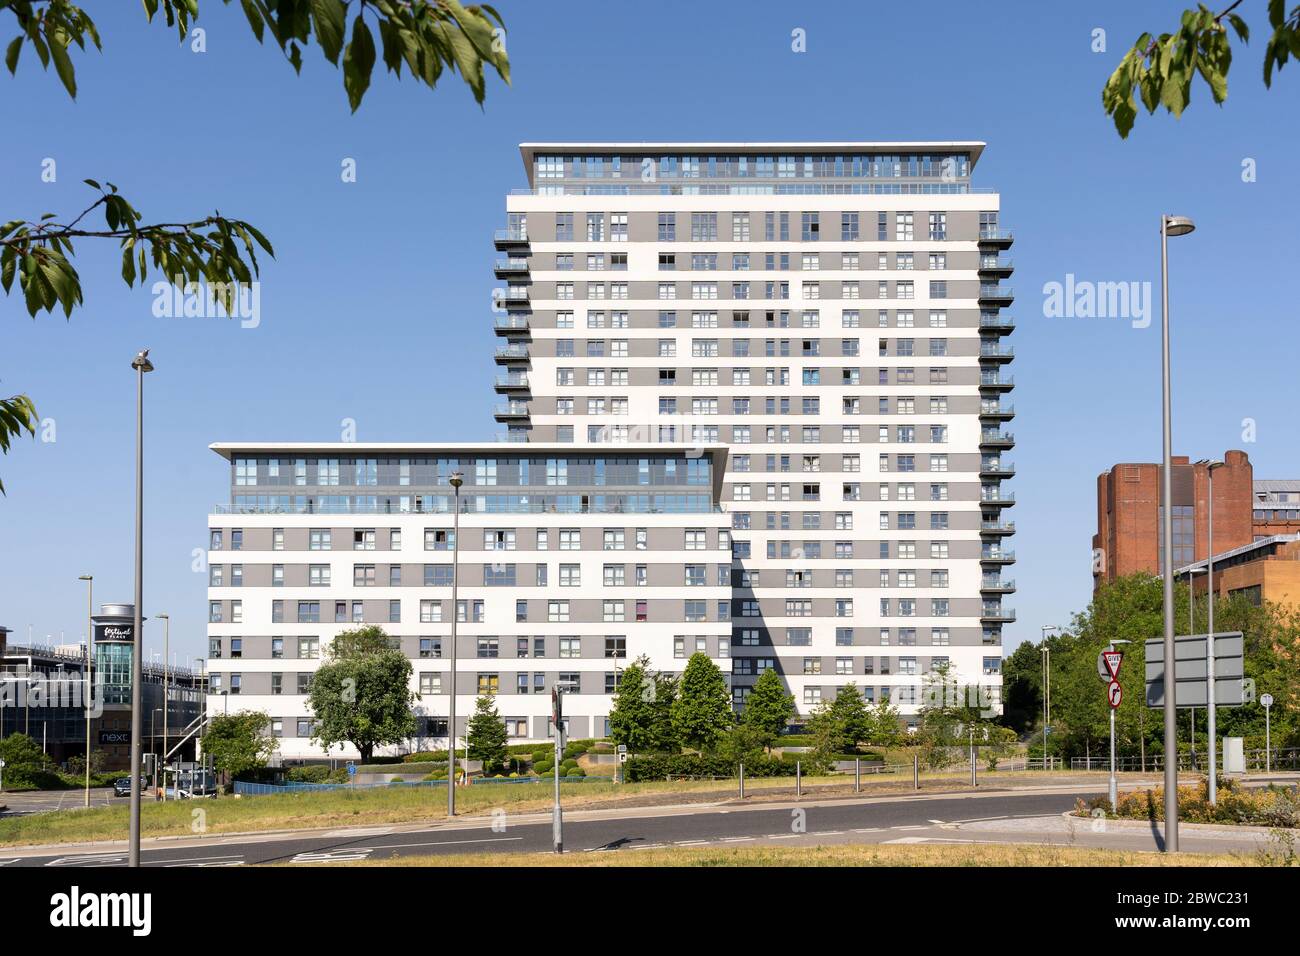 Skyline Plaza, un immeuble de bureaux de haute hauteur rénové à Basingstoke. Concept: Marché de location, appartements, investissement immobilier, propriétaires, location Banque D'Images